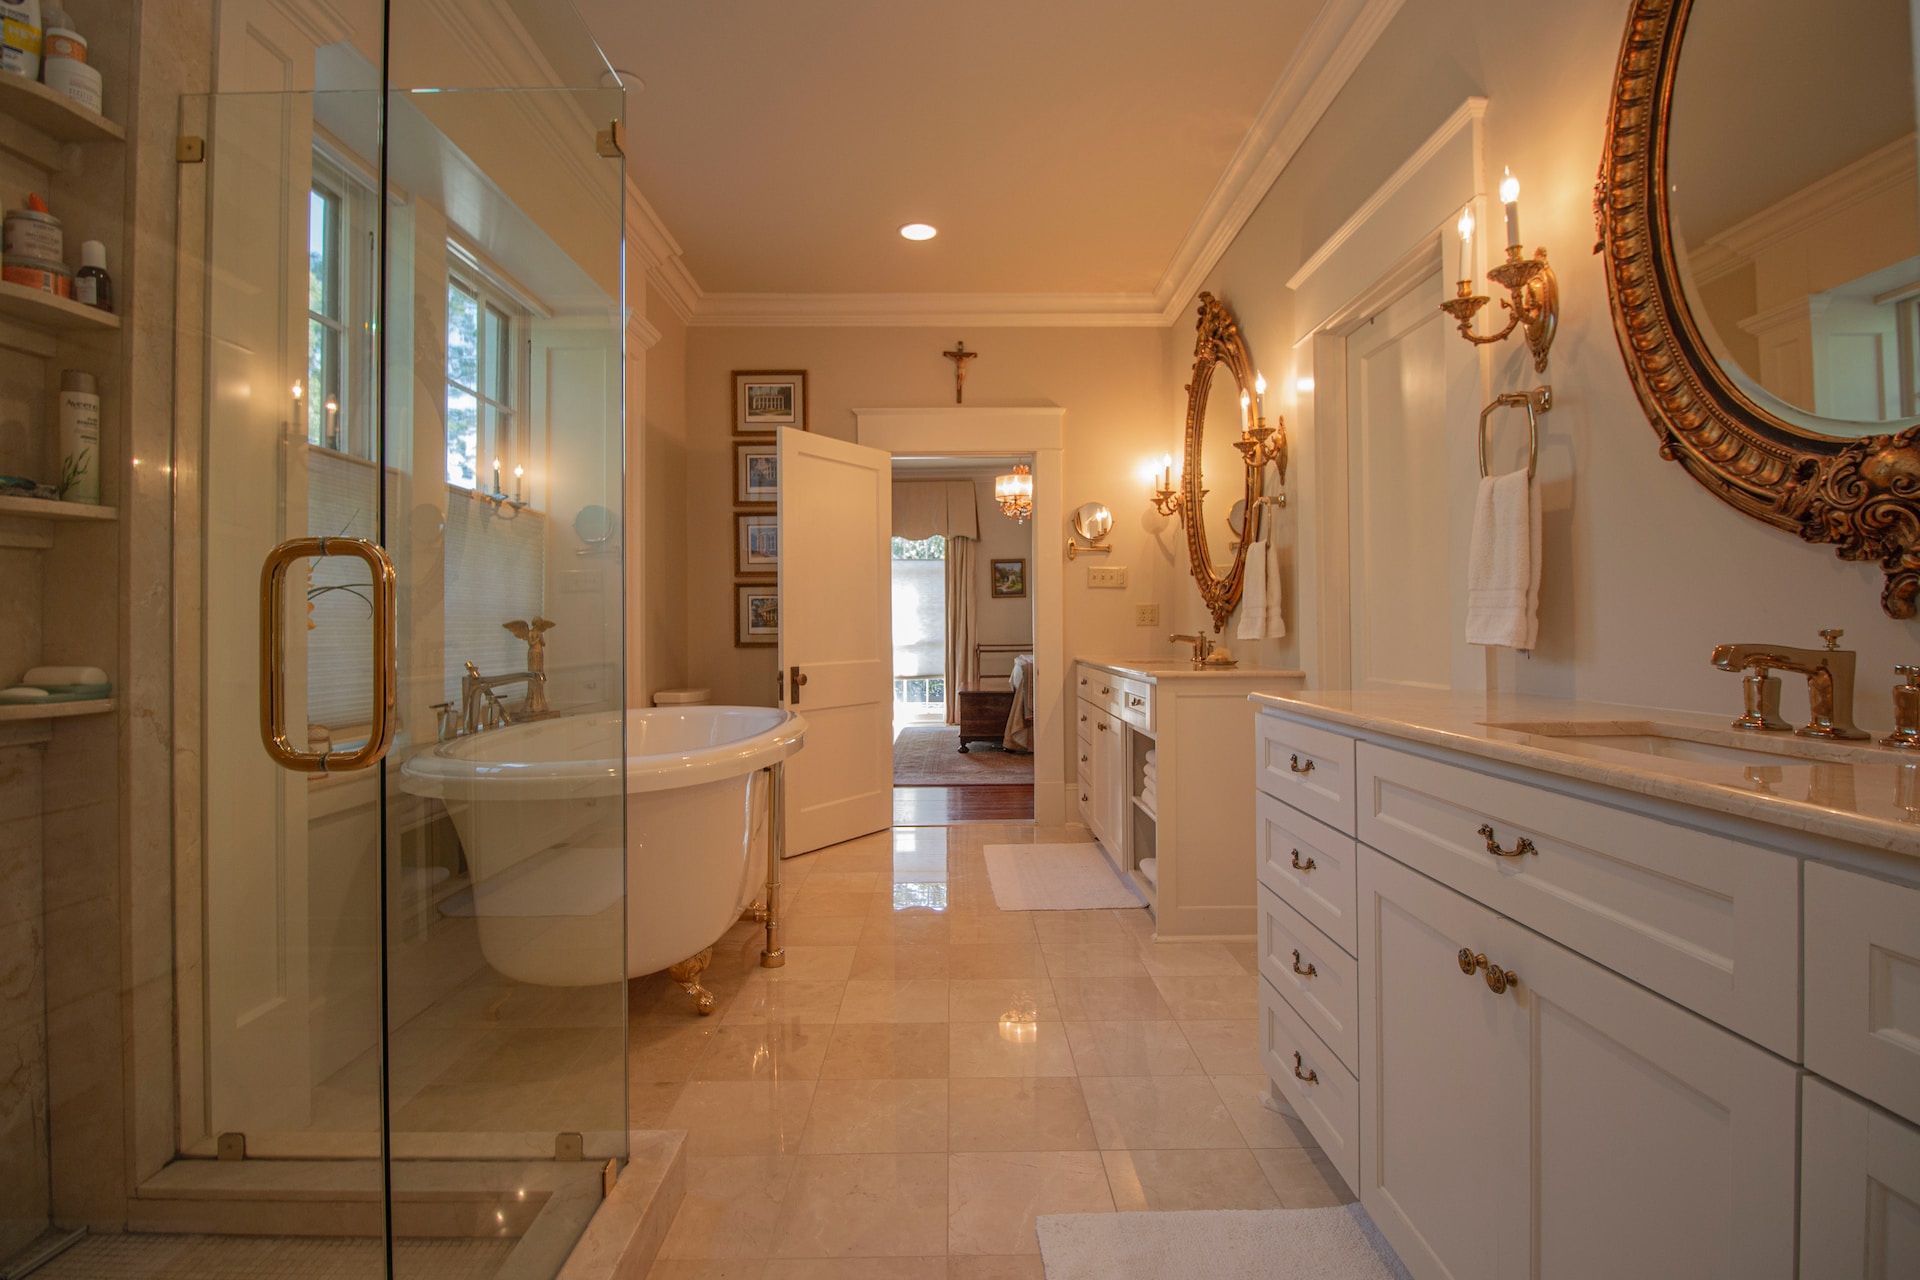 Magnifique salle de bain de luxe blanche et dorée